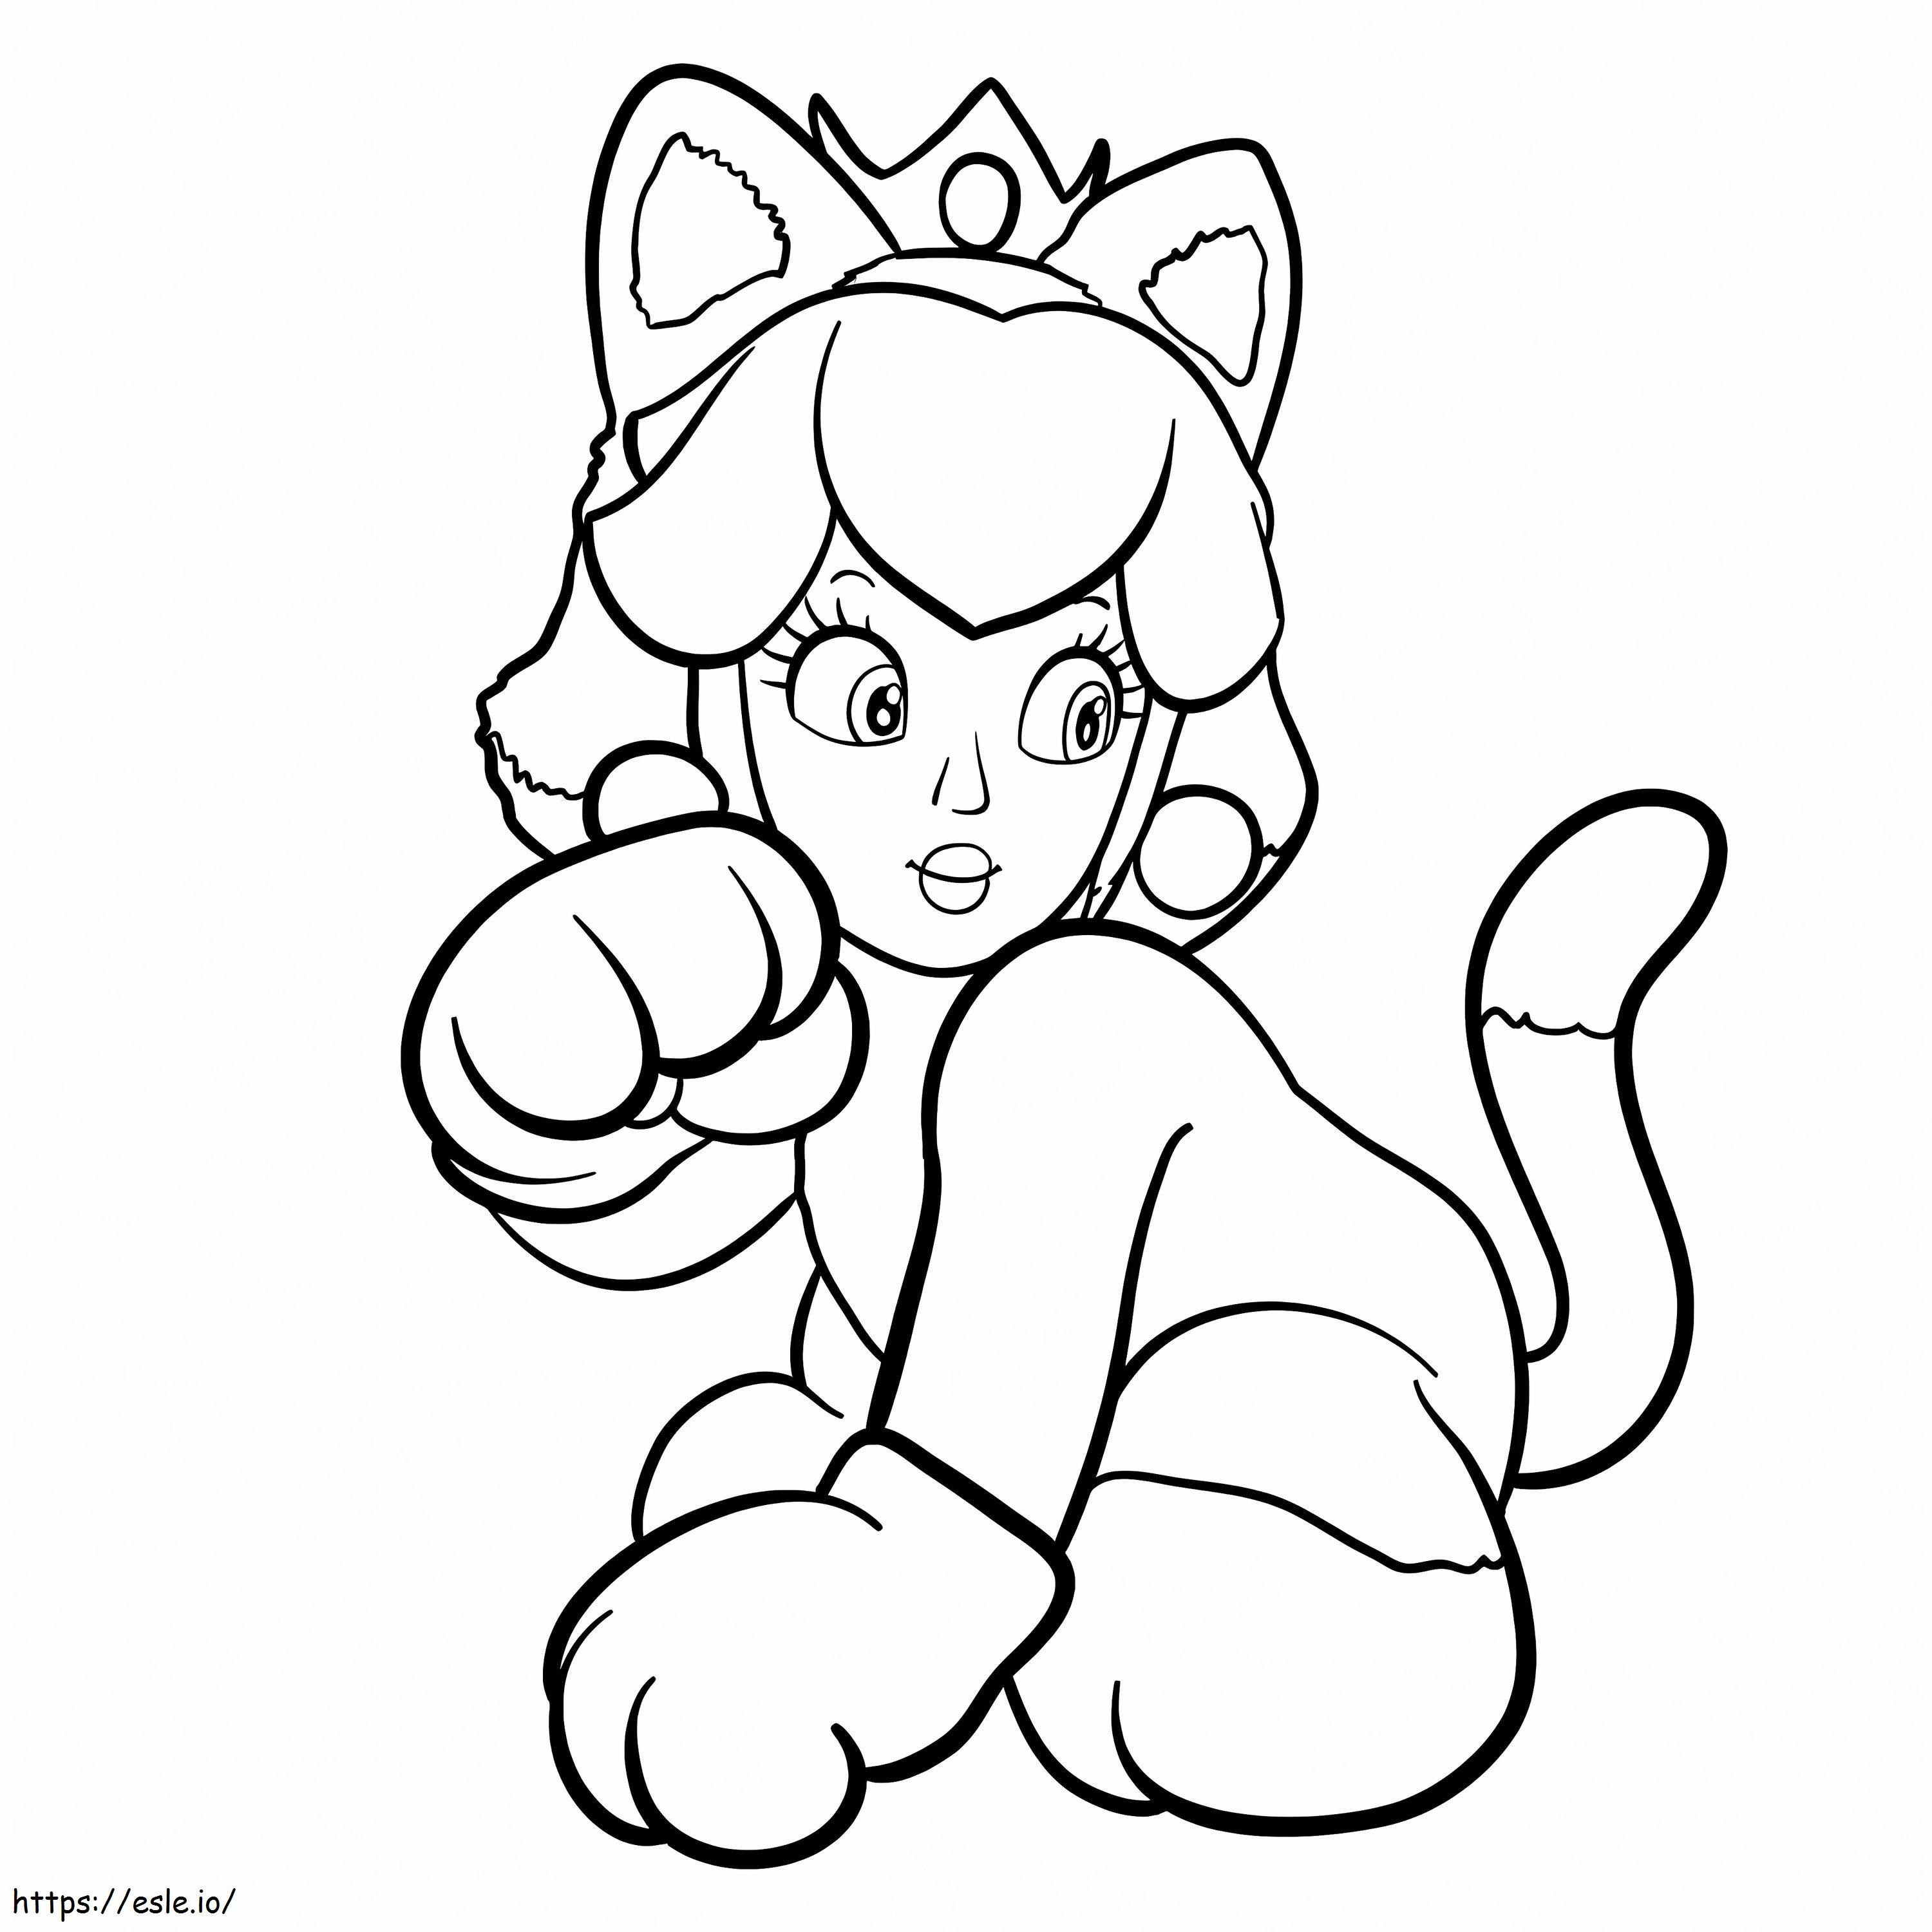 Coloriage Princesse Peach dans un costume de chat à imprimer dessin